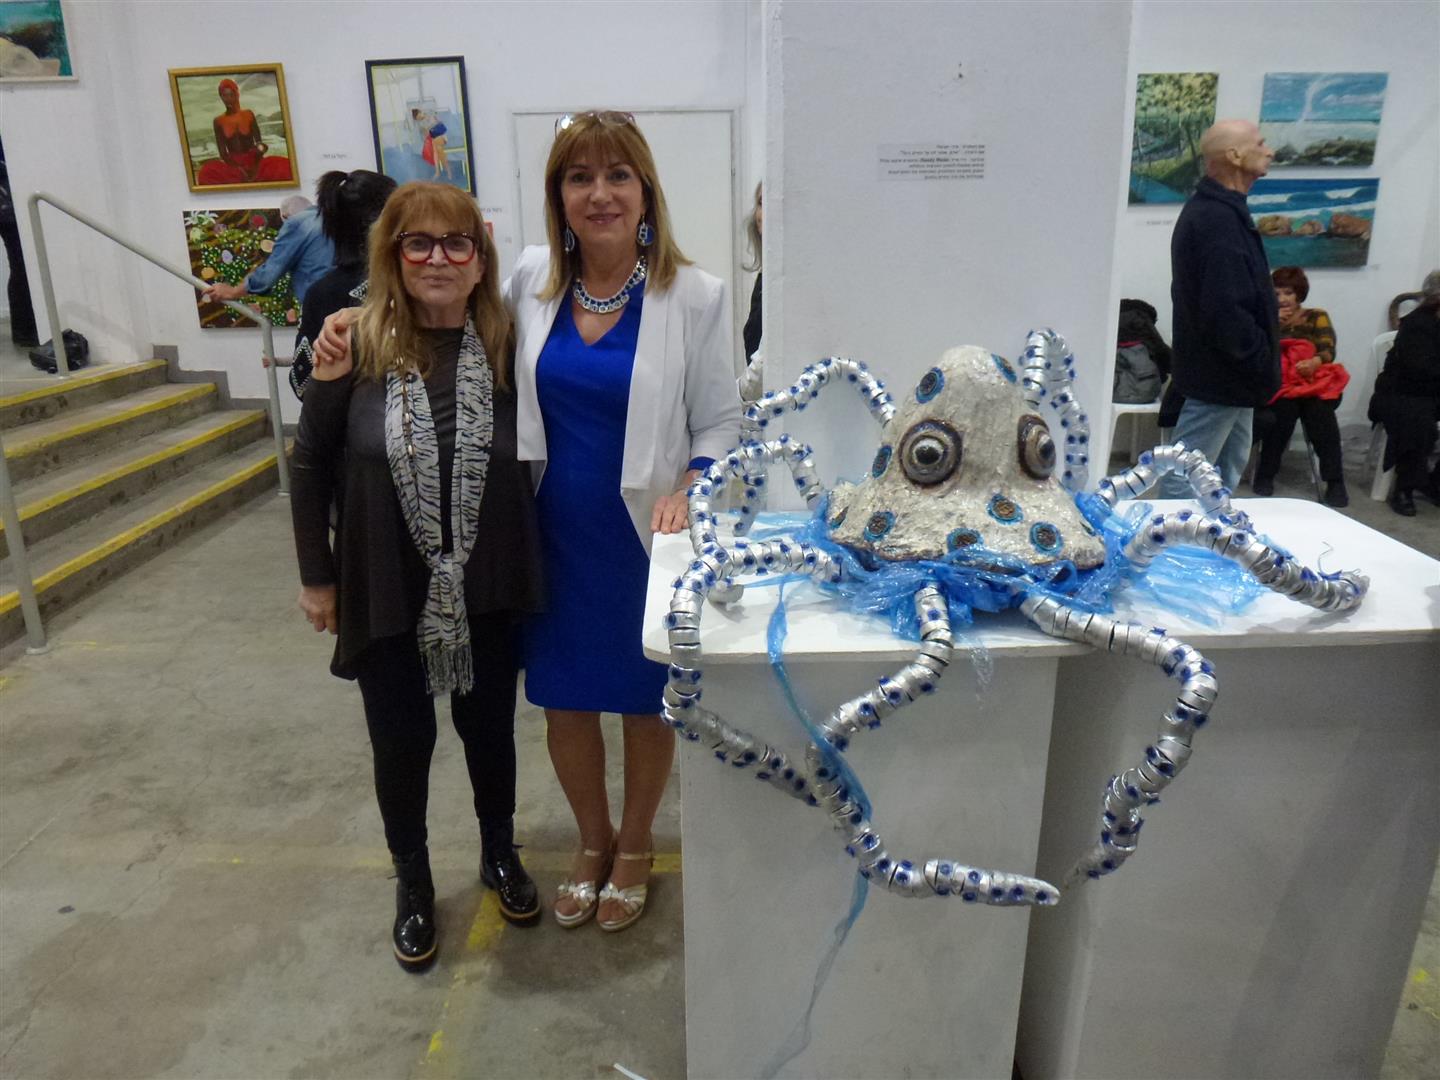 עם דליה ויטמן חברתי היקרה באירוע הפתיחה לתערוכה